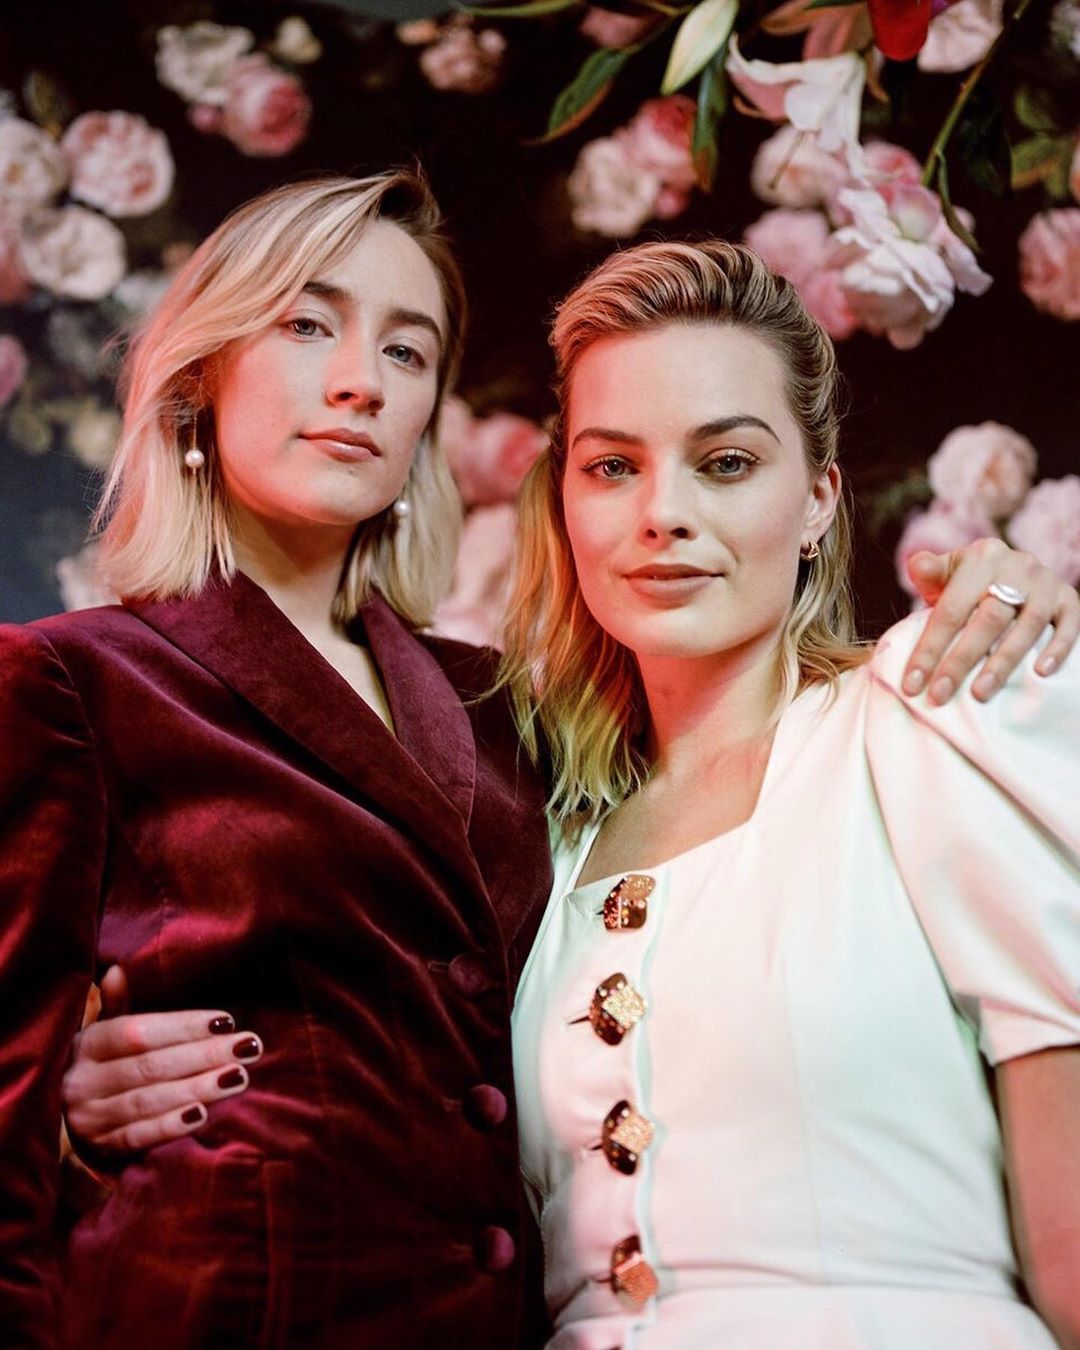 Margot Robbie Updates on Instagram: “Margot Robbie and Saoirse